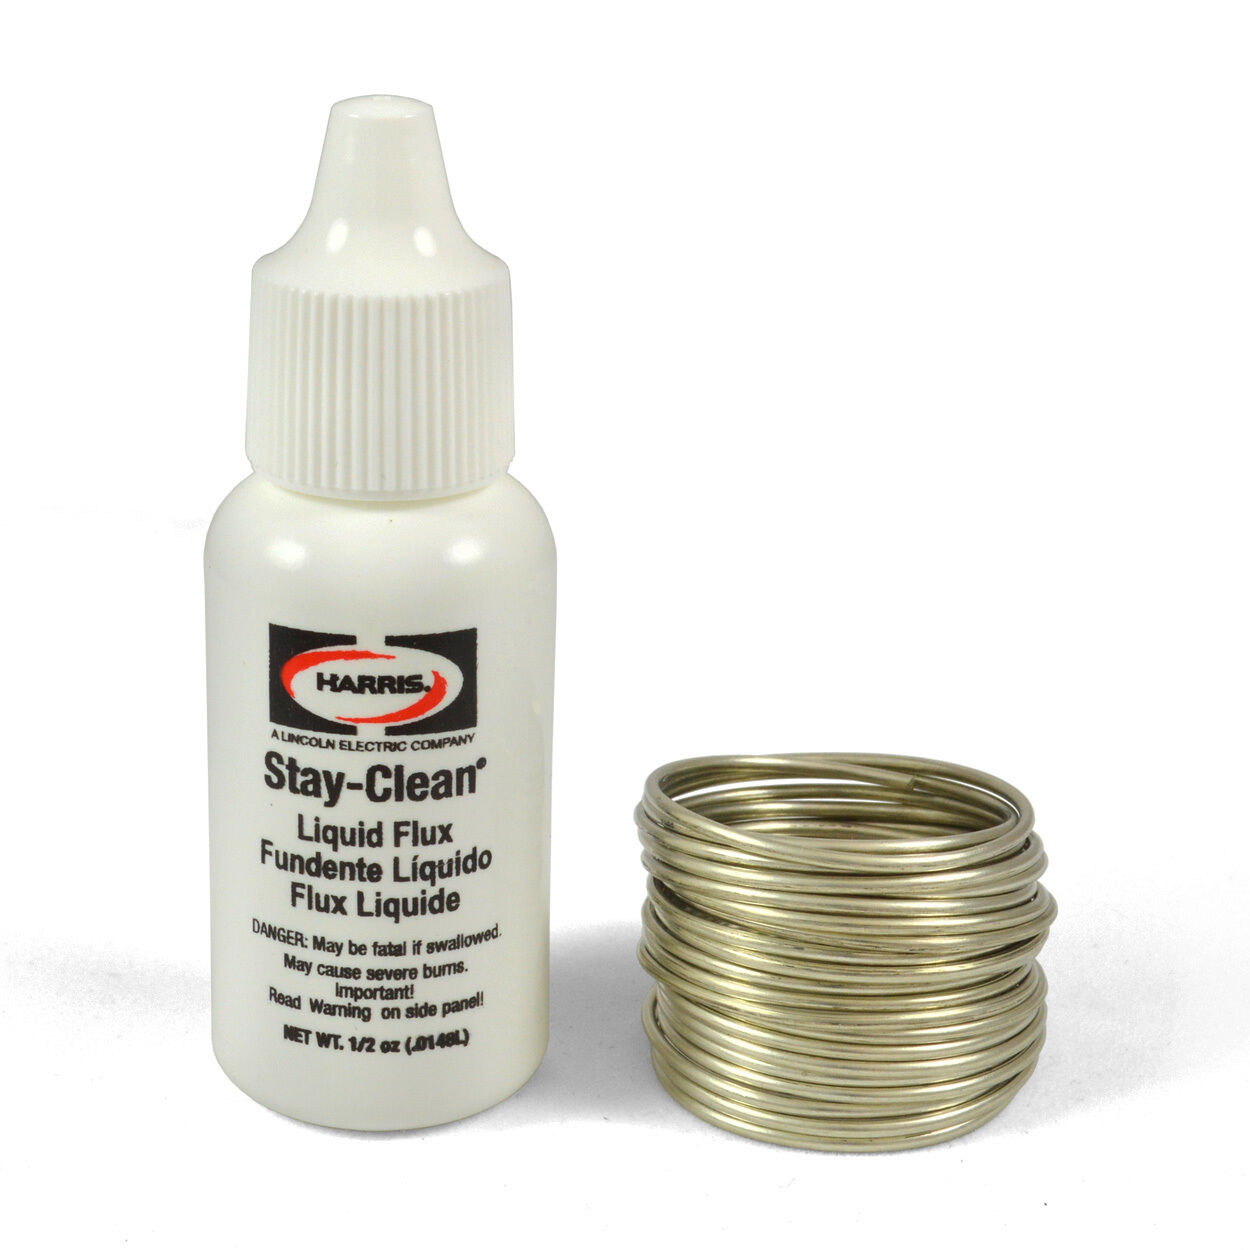 Harris Stay-brite Silver Bearing Solder & Stay Clean Liquid Flux Kit, Sbskpop